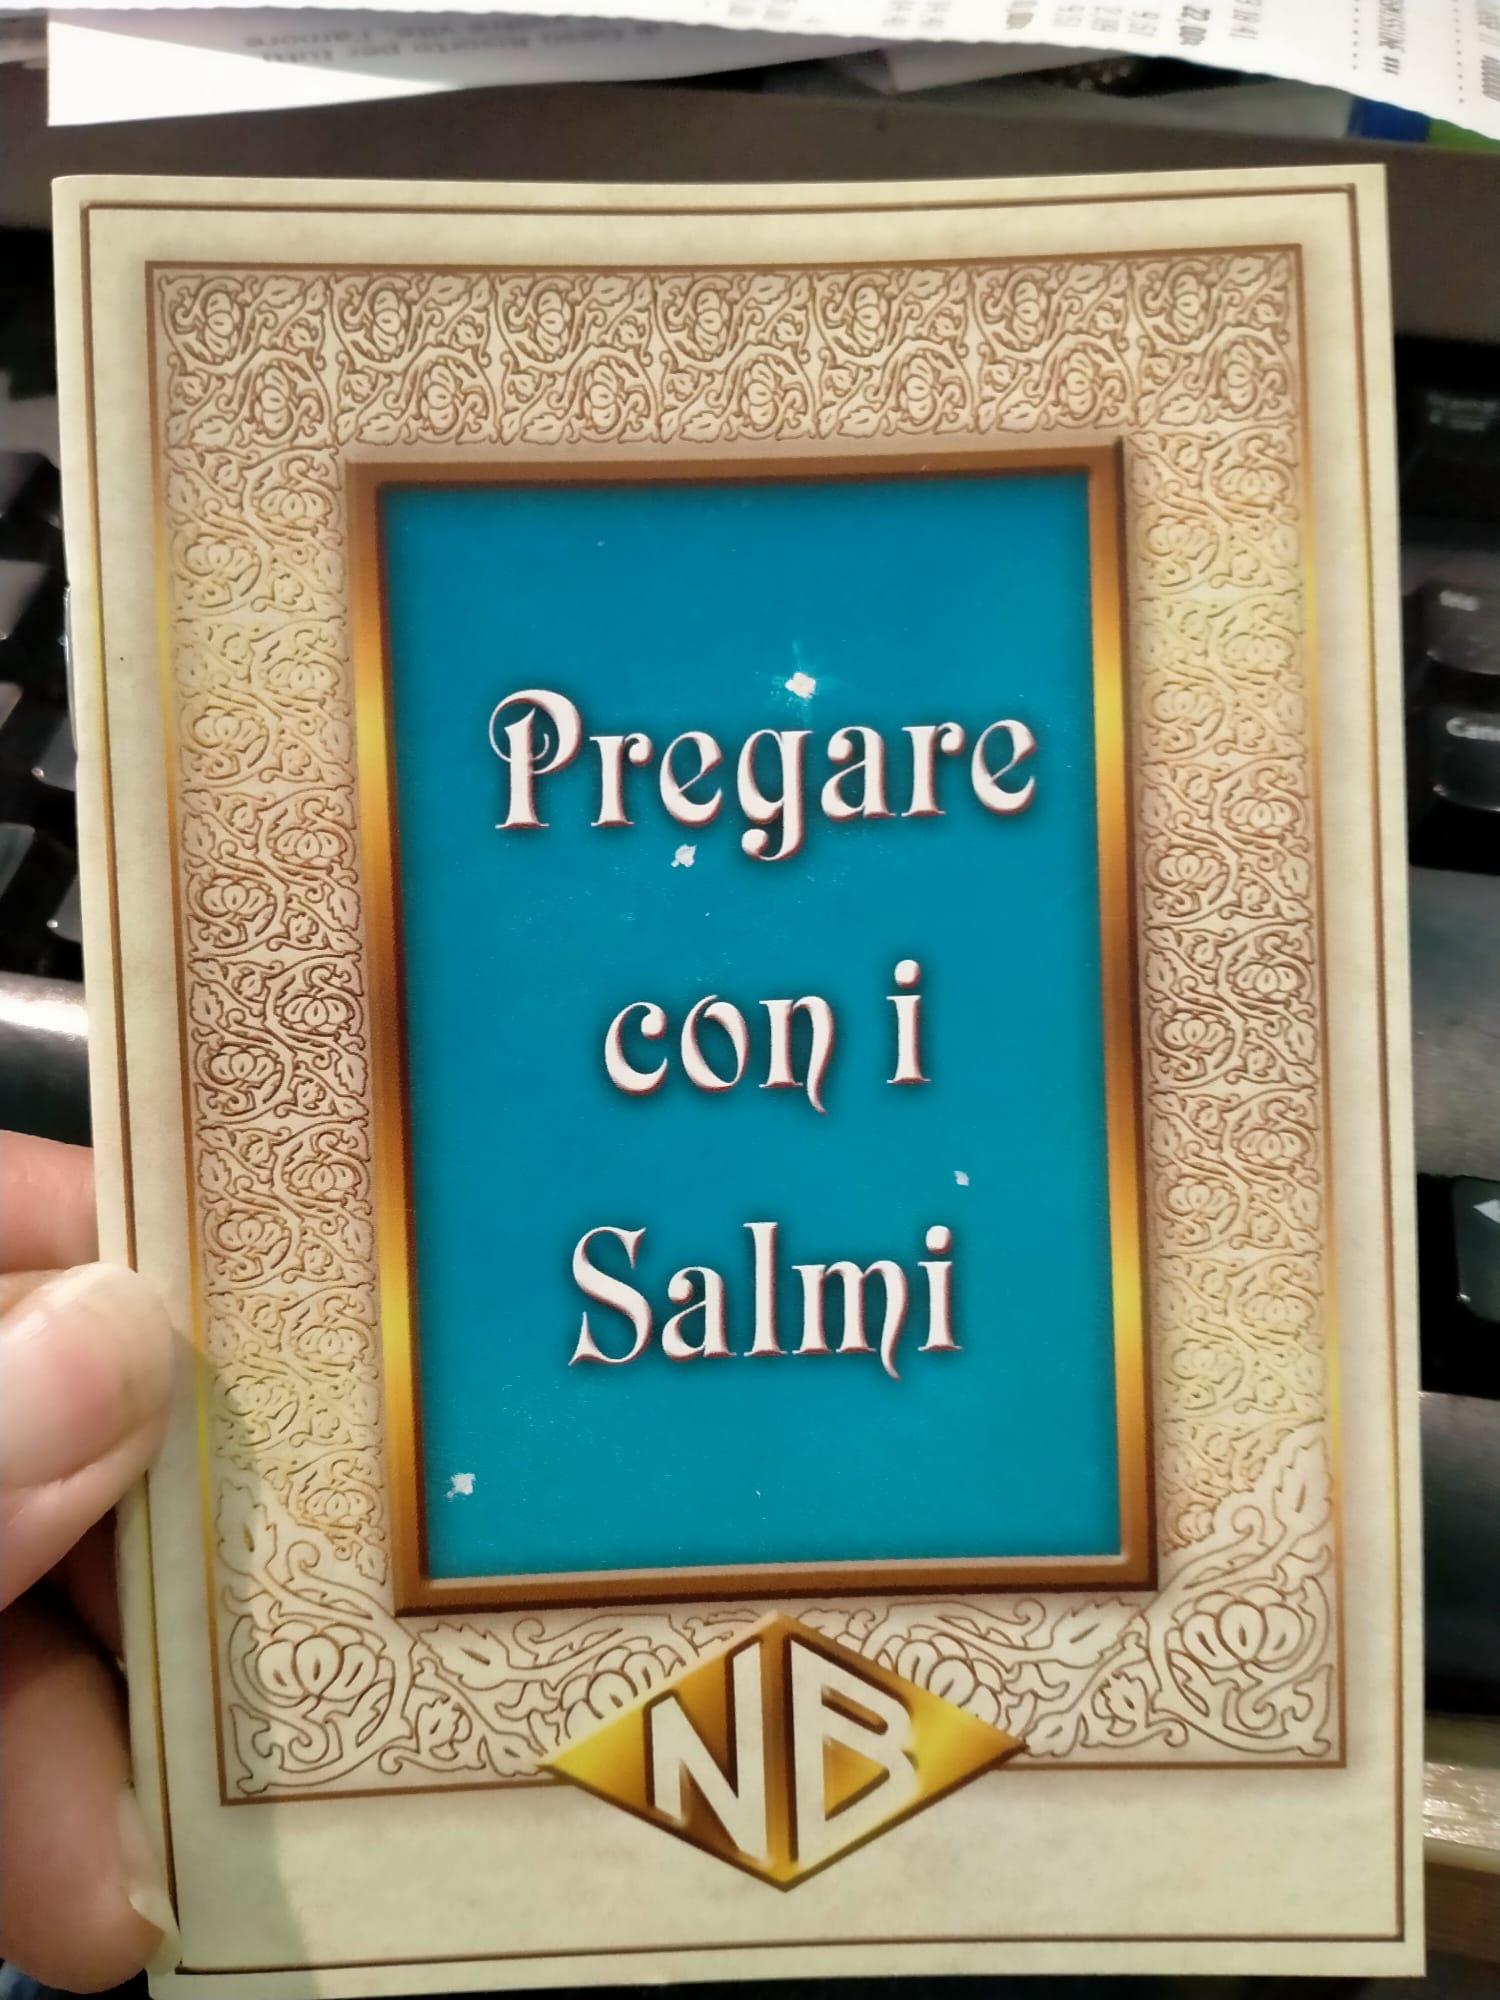 PREGARE CON I SALMI